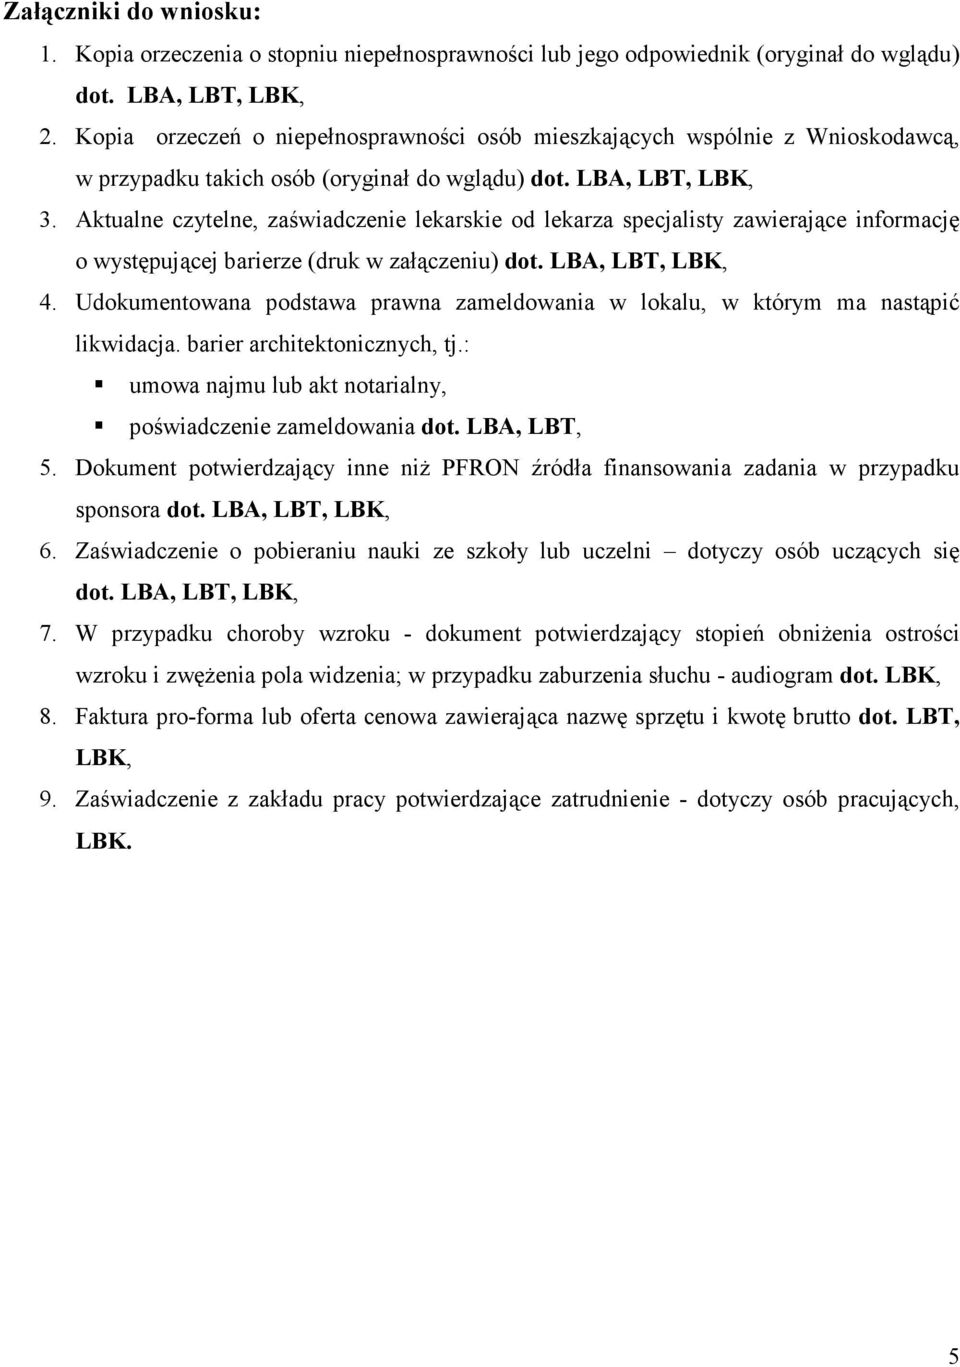 Aktualne czytelne, zaświadczenie lekarskie od lekarza specjalisty zawierające informację o występującej barierze (druk w załączeniu) dot. LBA, LBT, LBK, 4.